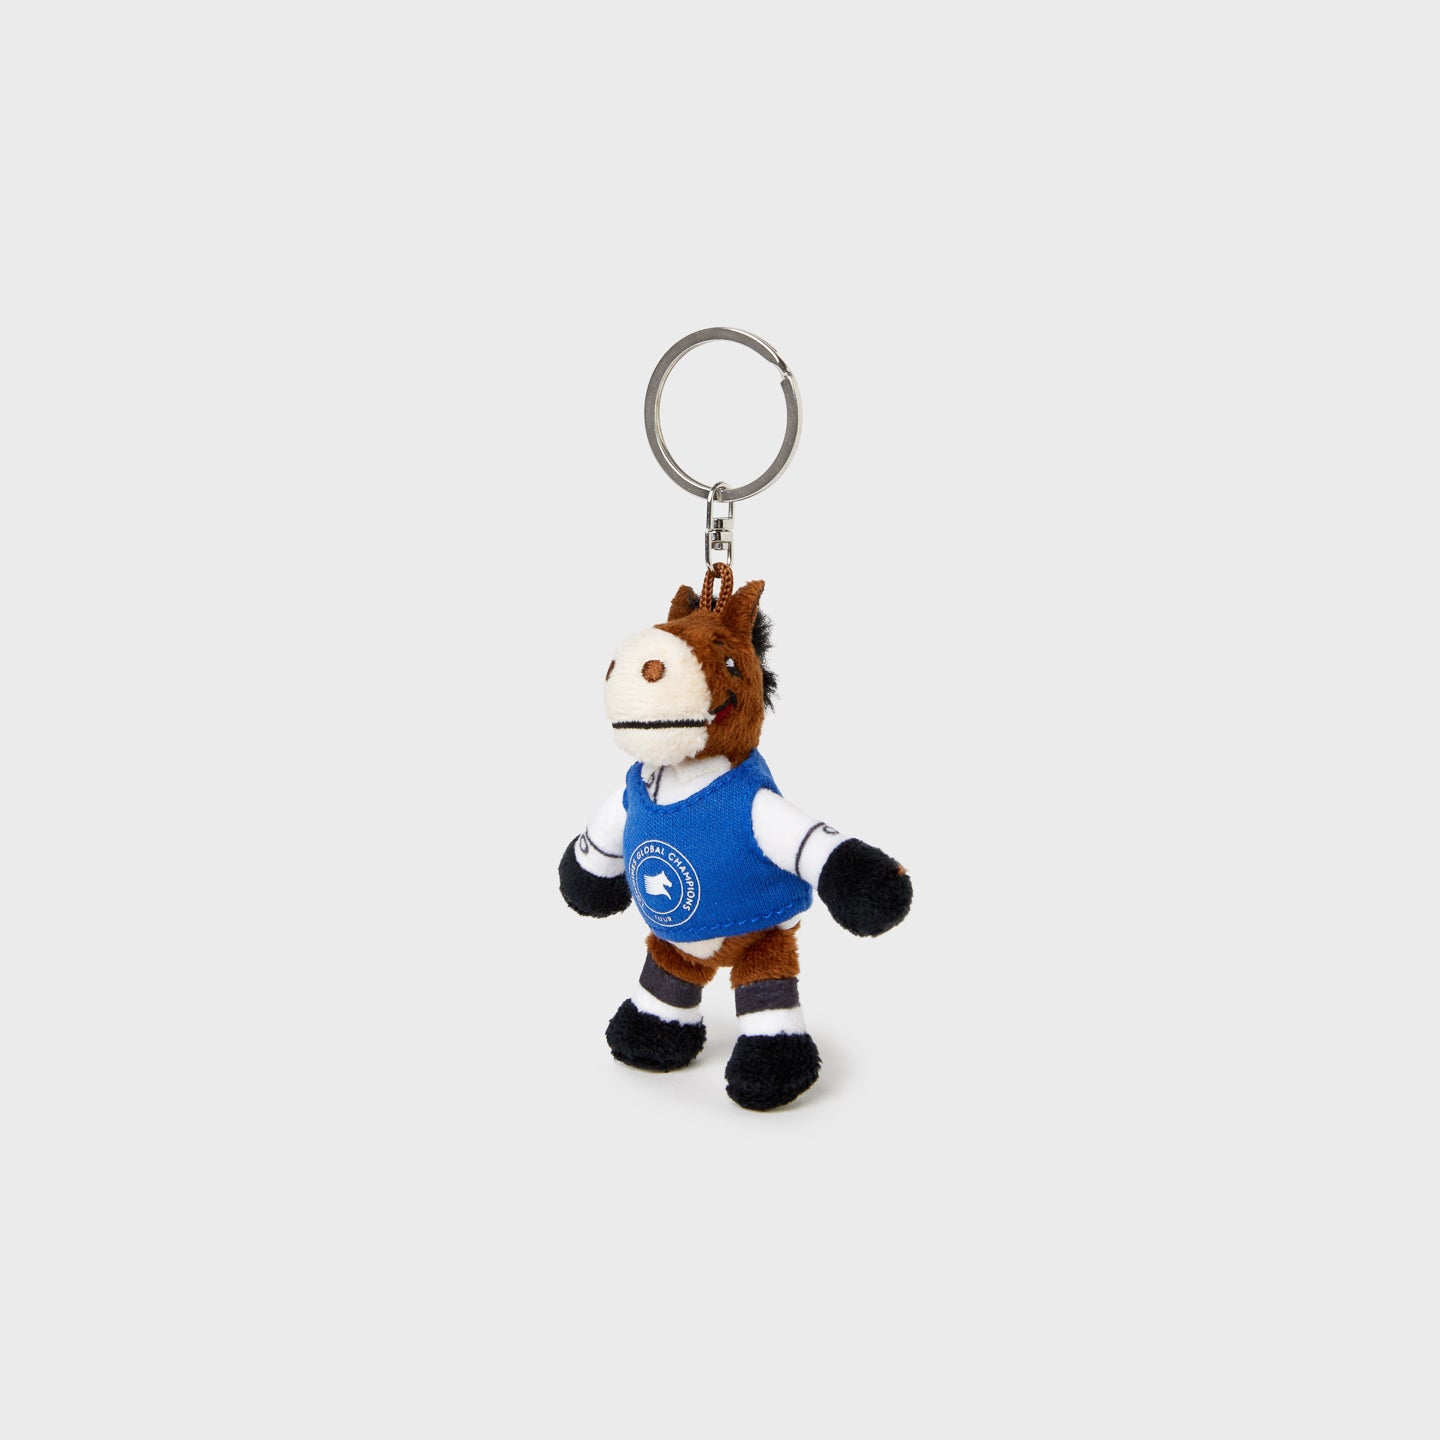 LGCT Mascot Plush Toy Key Ring - Sammy